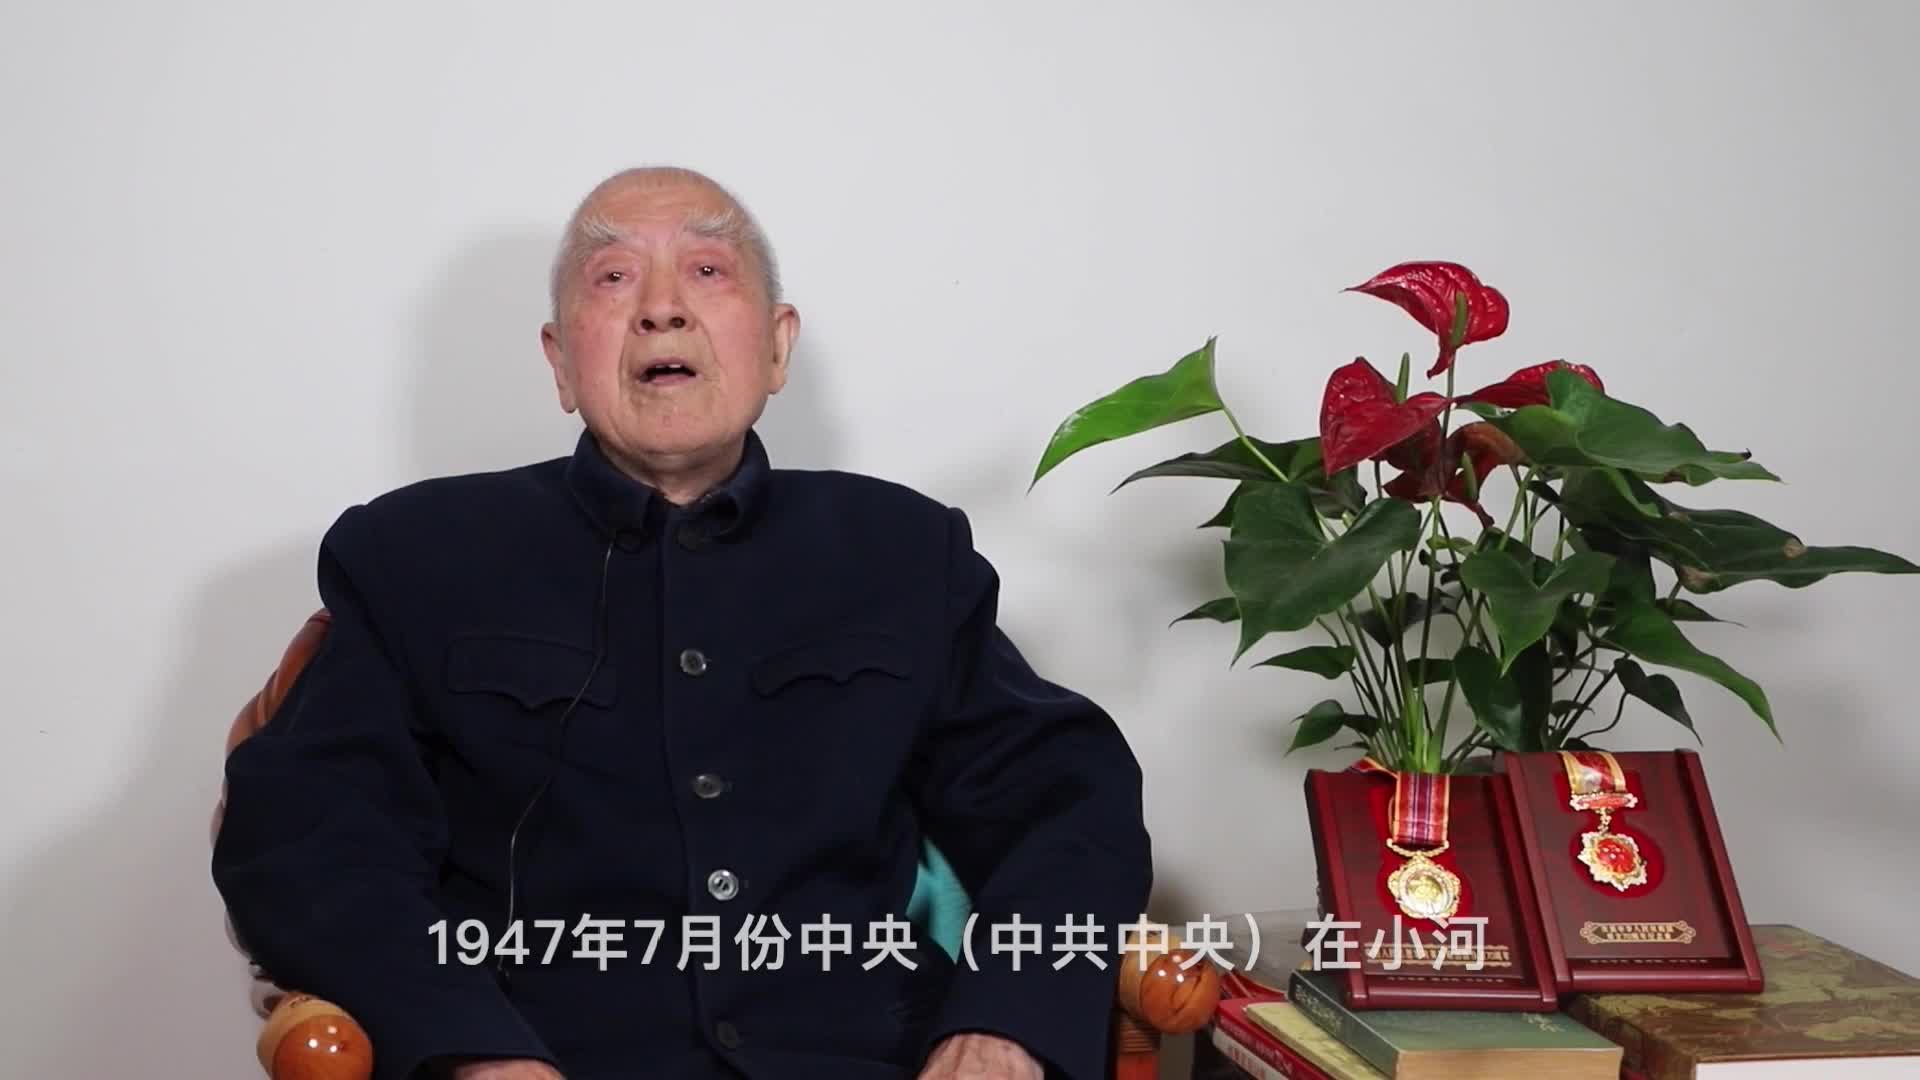 您的91 我的19| “百年奋斗 铸就辉煌”庆祝中国共产党成立100周年网络视听短视频大赛作品展播